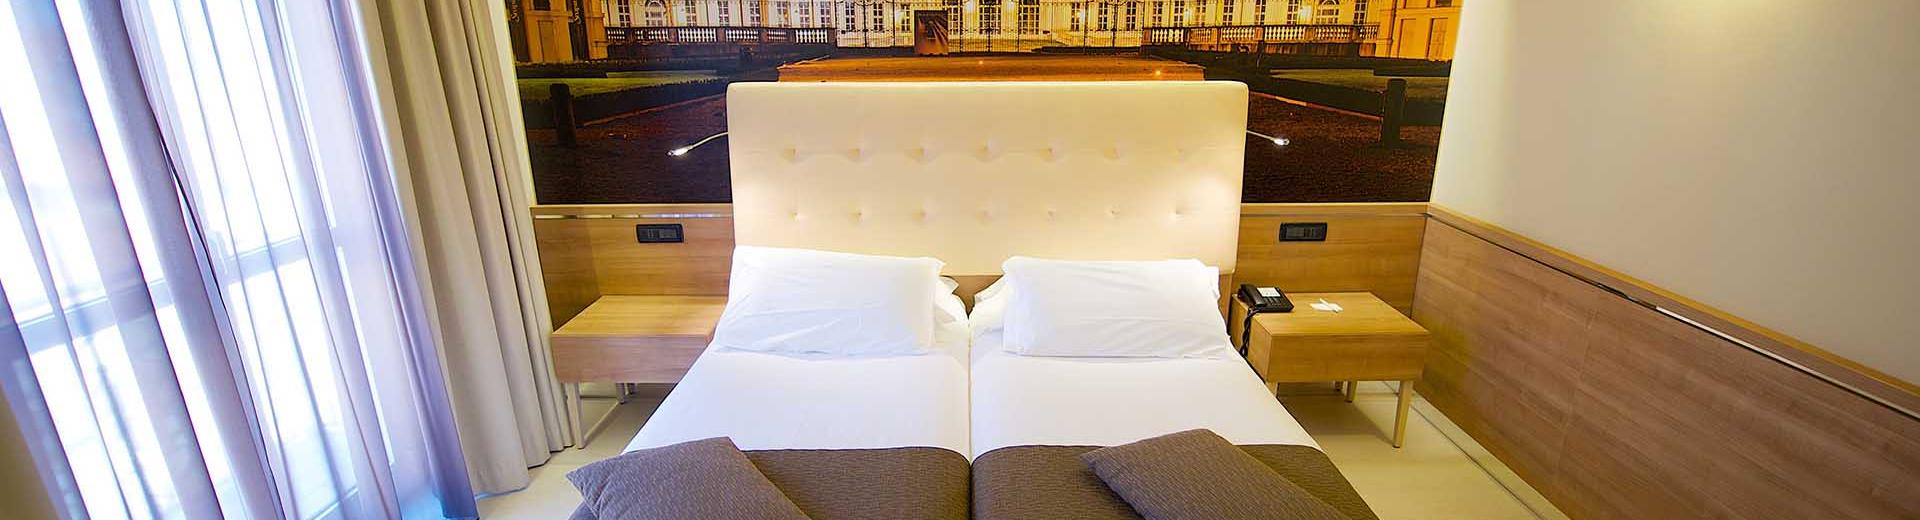 Las junior suites en el Best Western Hotel Luxor. hotel 4 estrellas en Turín